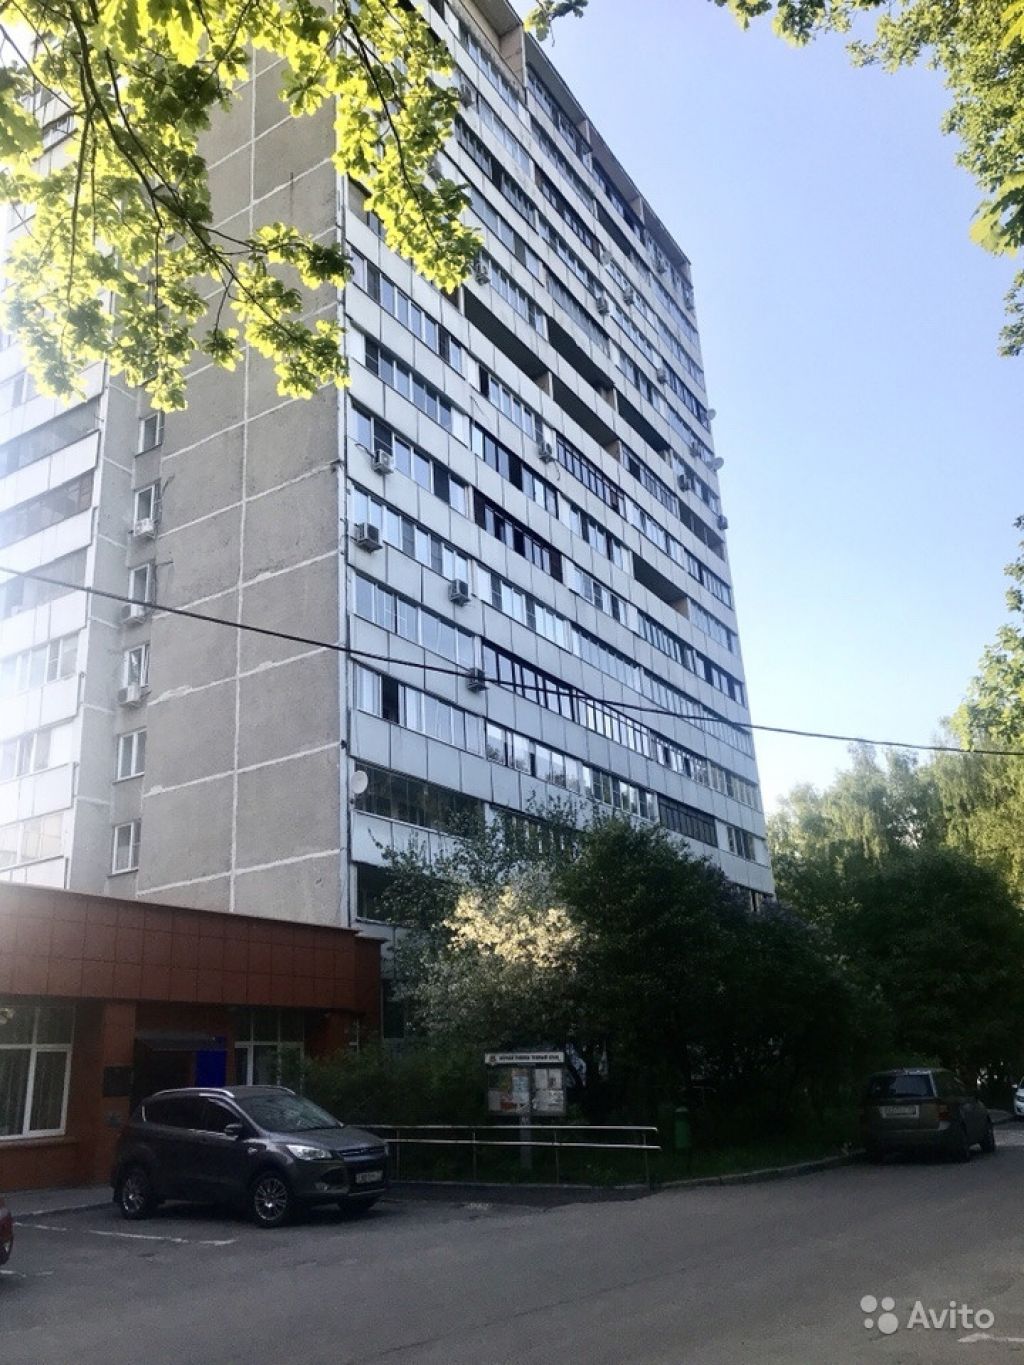 Сдам квартиру 1-к квартира 34.5 м² на 6 этаже 16-этажного панельного дома в Москве. Фото 1